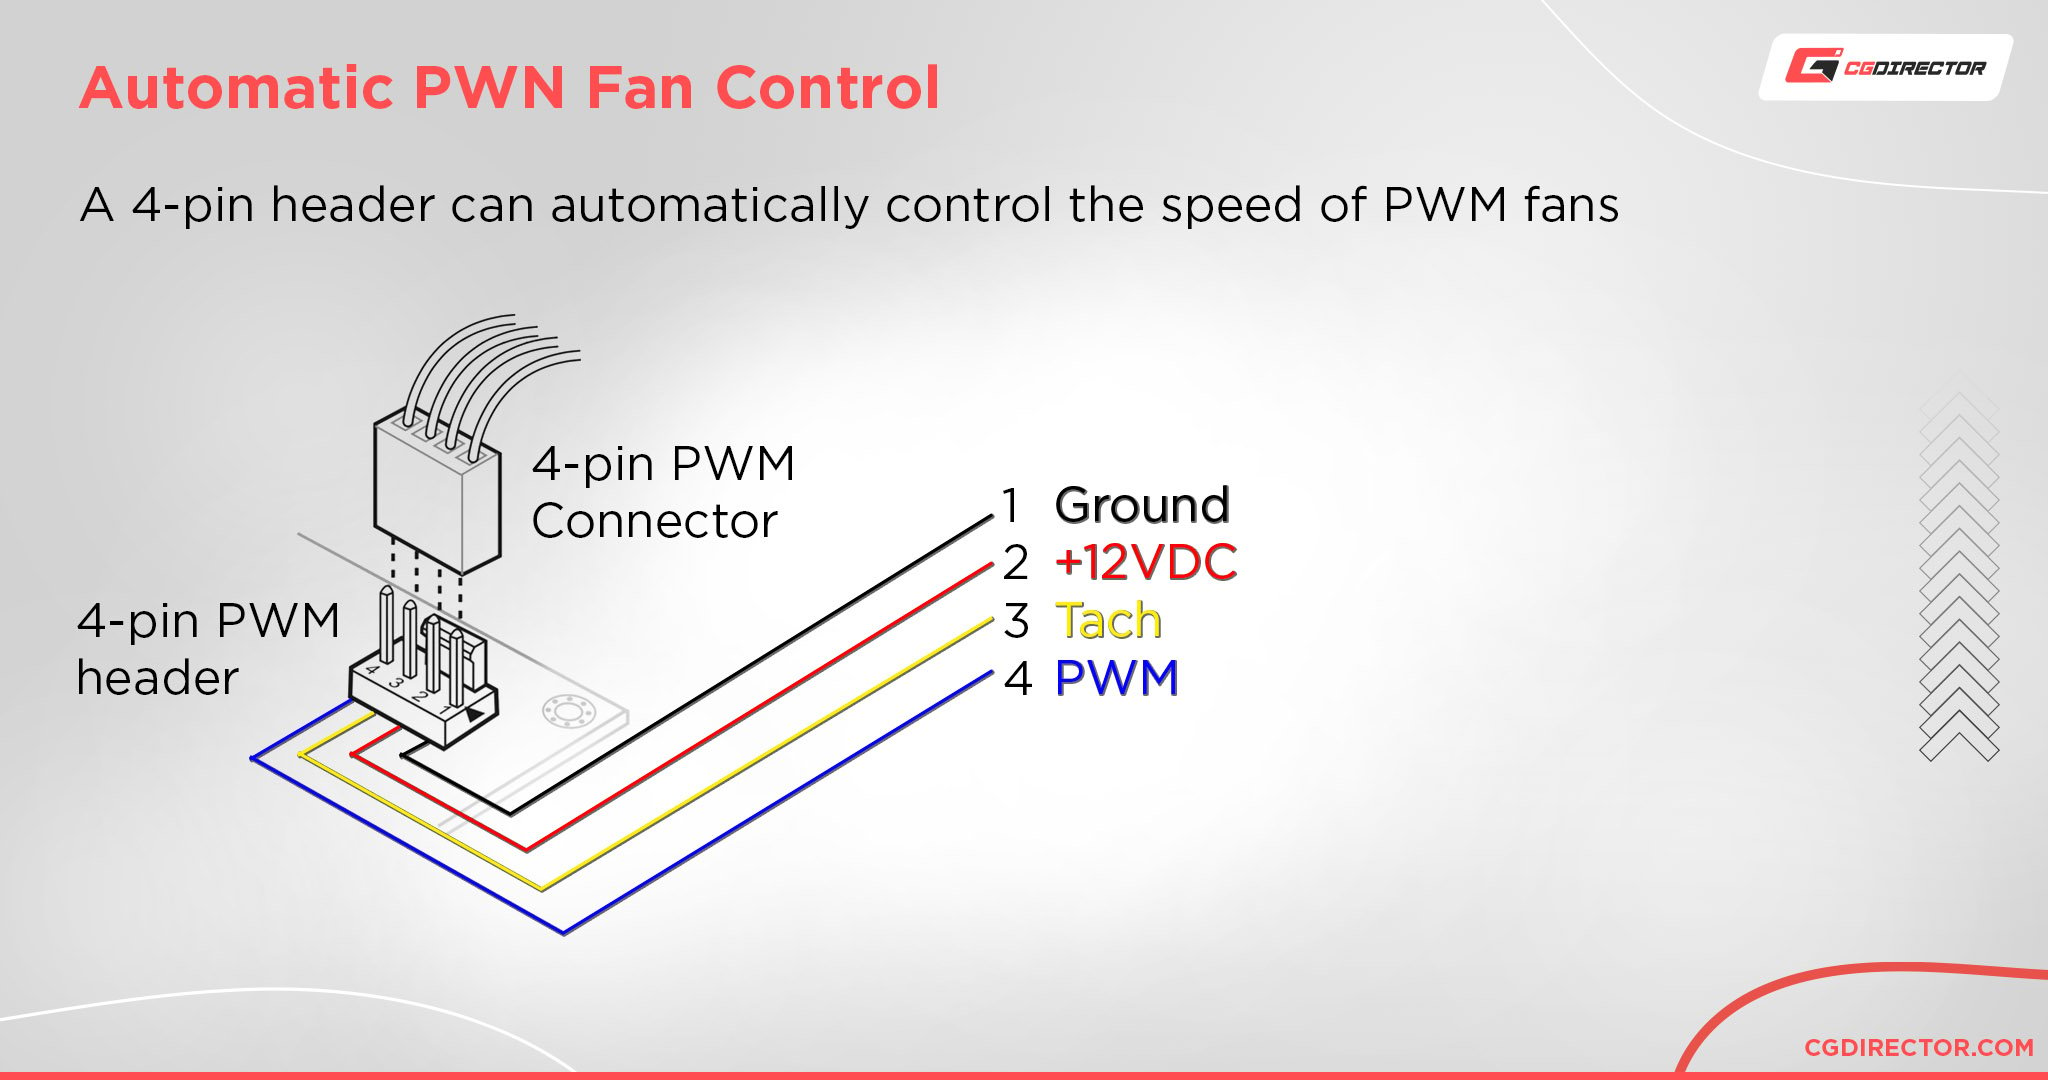 Automatic PWM Fan Control